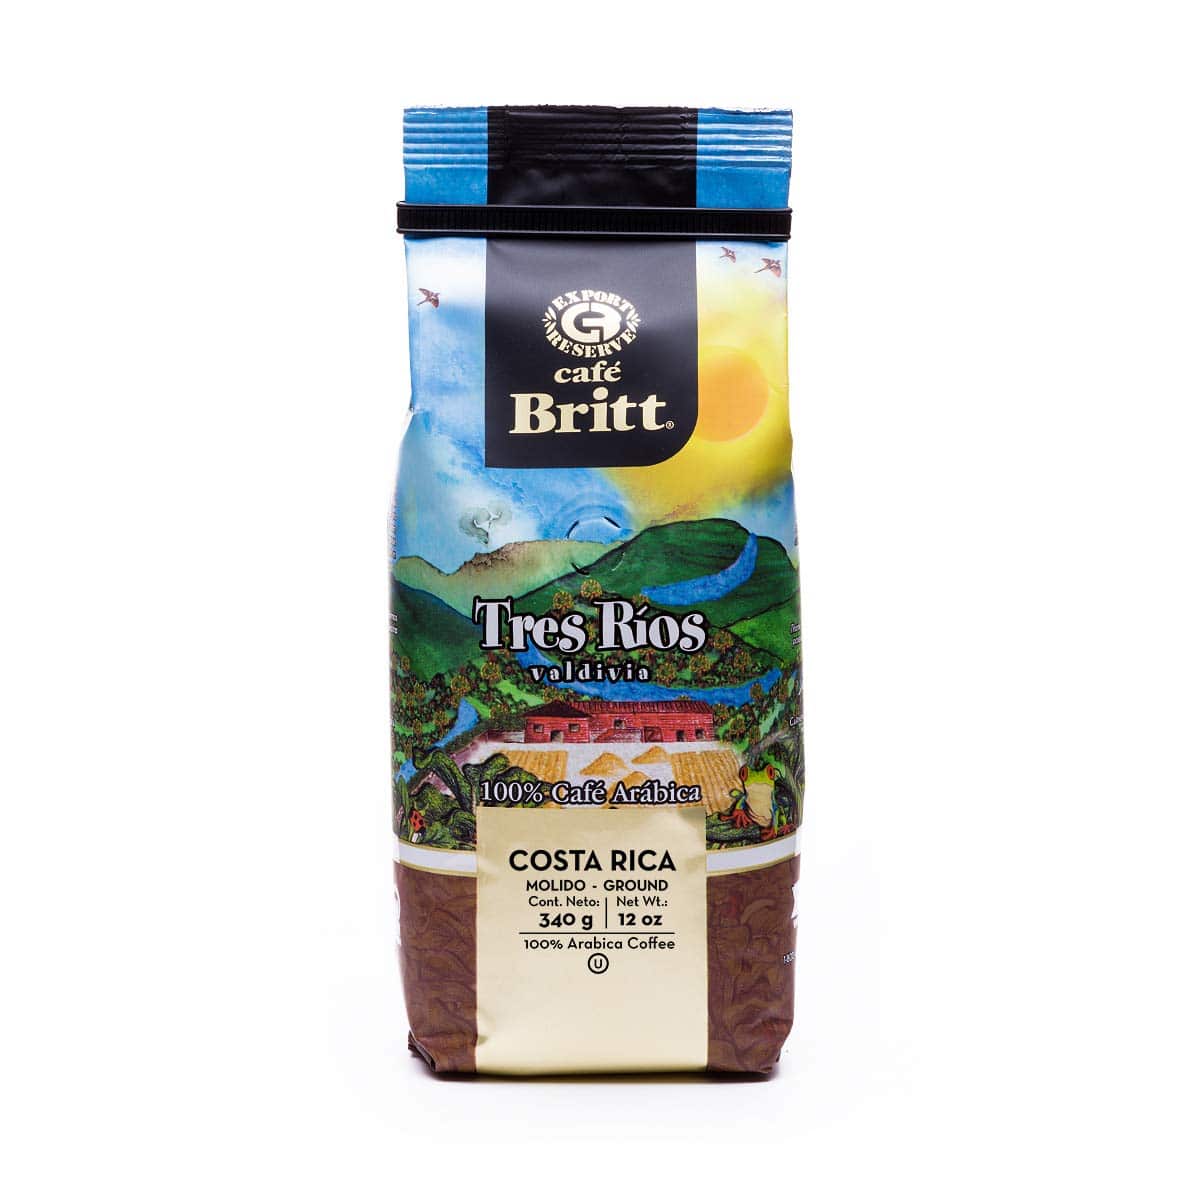 Café Britt® - Costa Rican Tres Rios Valdivia Coffee: A Gourmet Delight